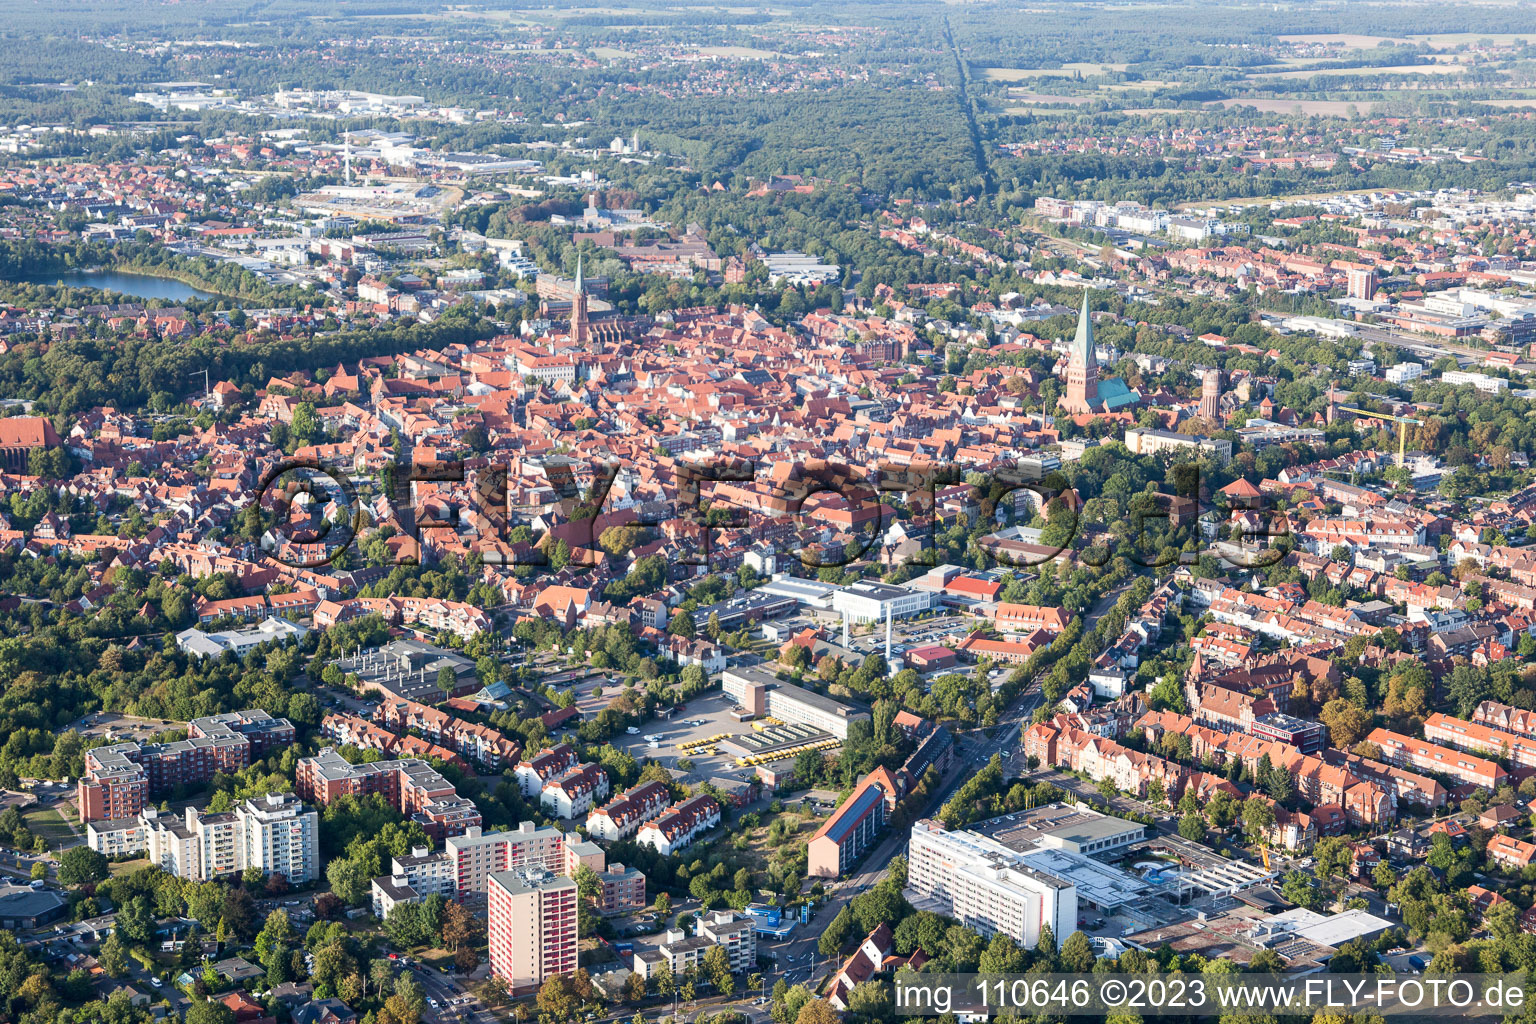 Altstadtbereich und Innenstadtzentrum in Lüneburg im Bundesland Niedersachsen, Deutschland aus der Vogelperspektive